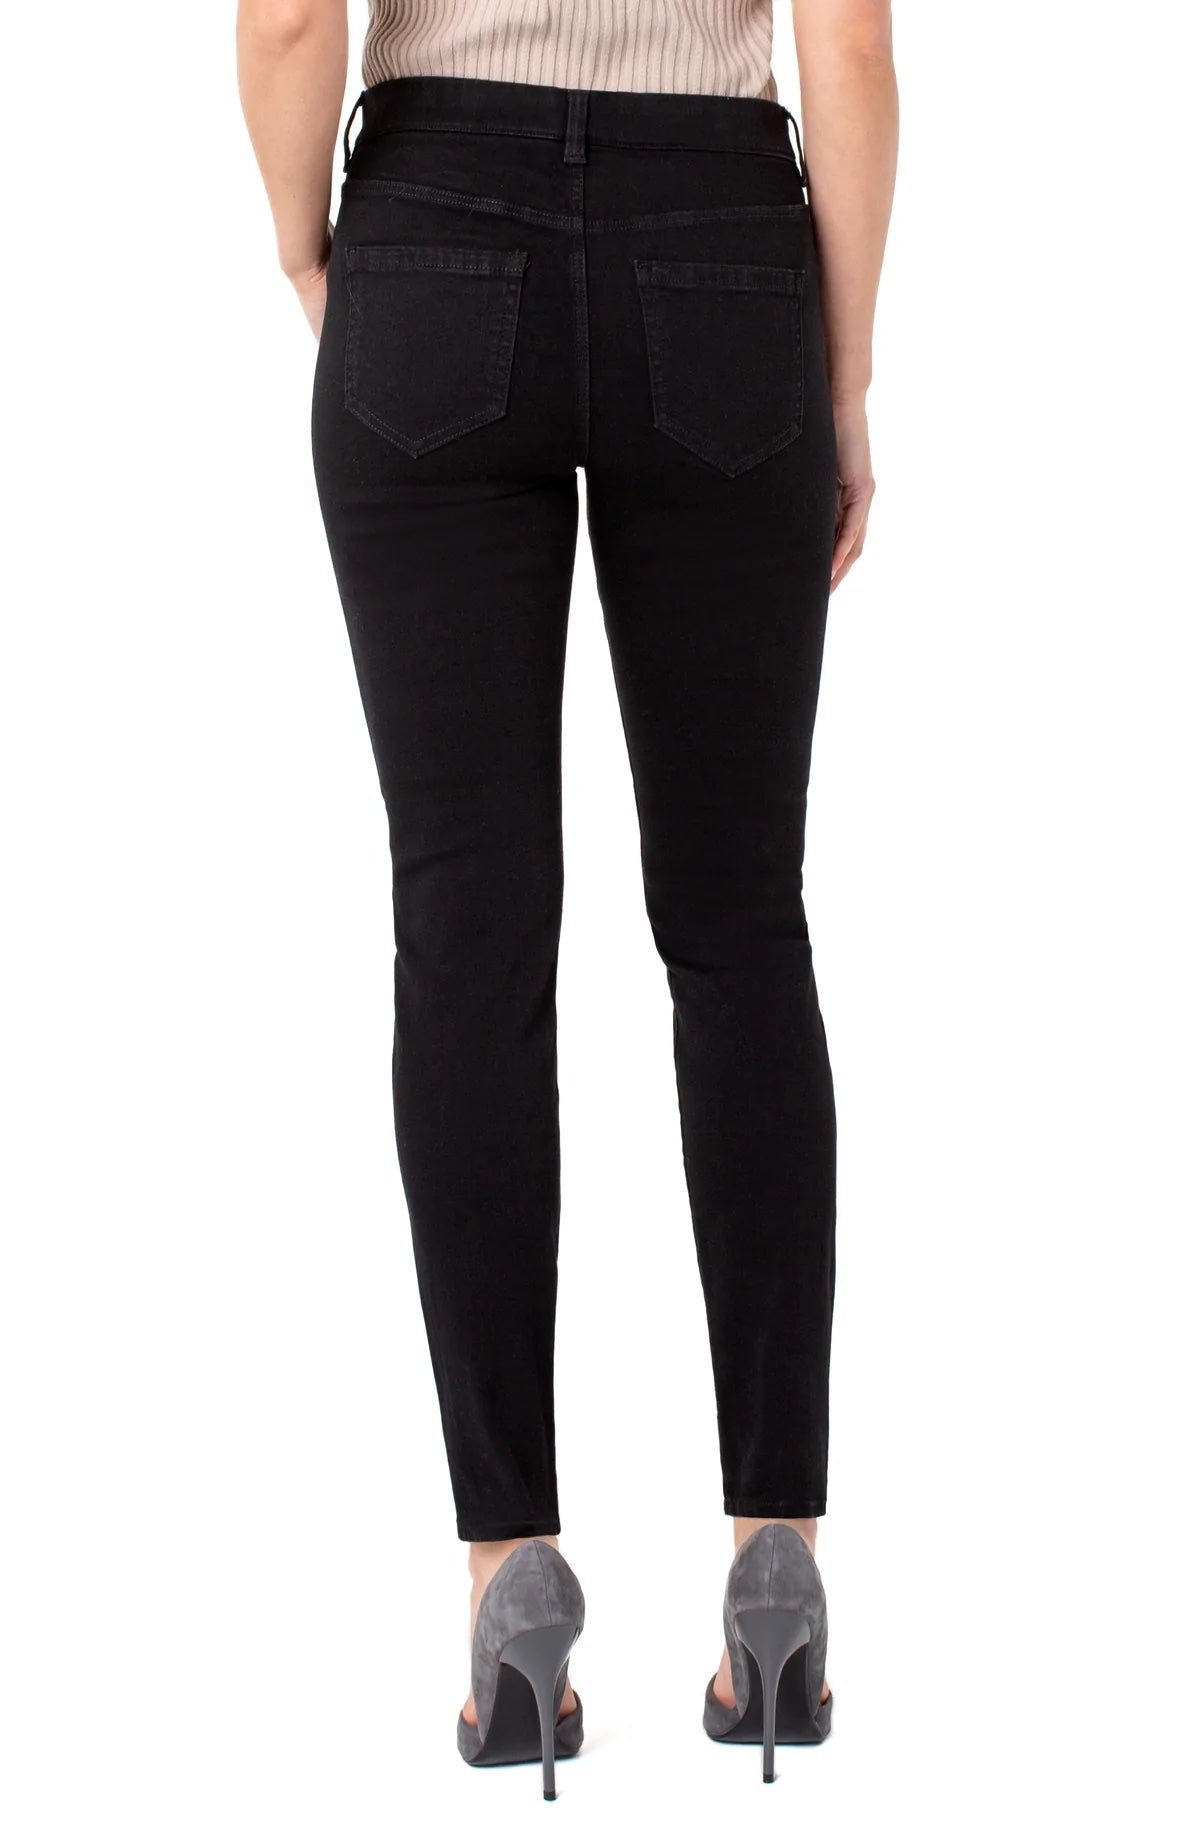 Gia Glider Skinny Jeans in Black Rinse - 32"